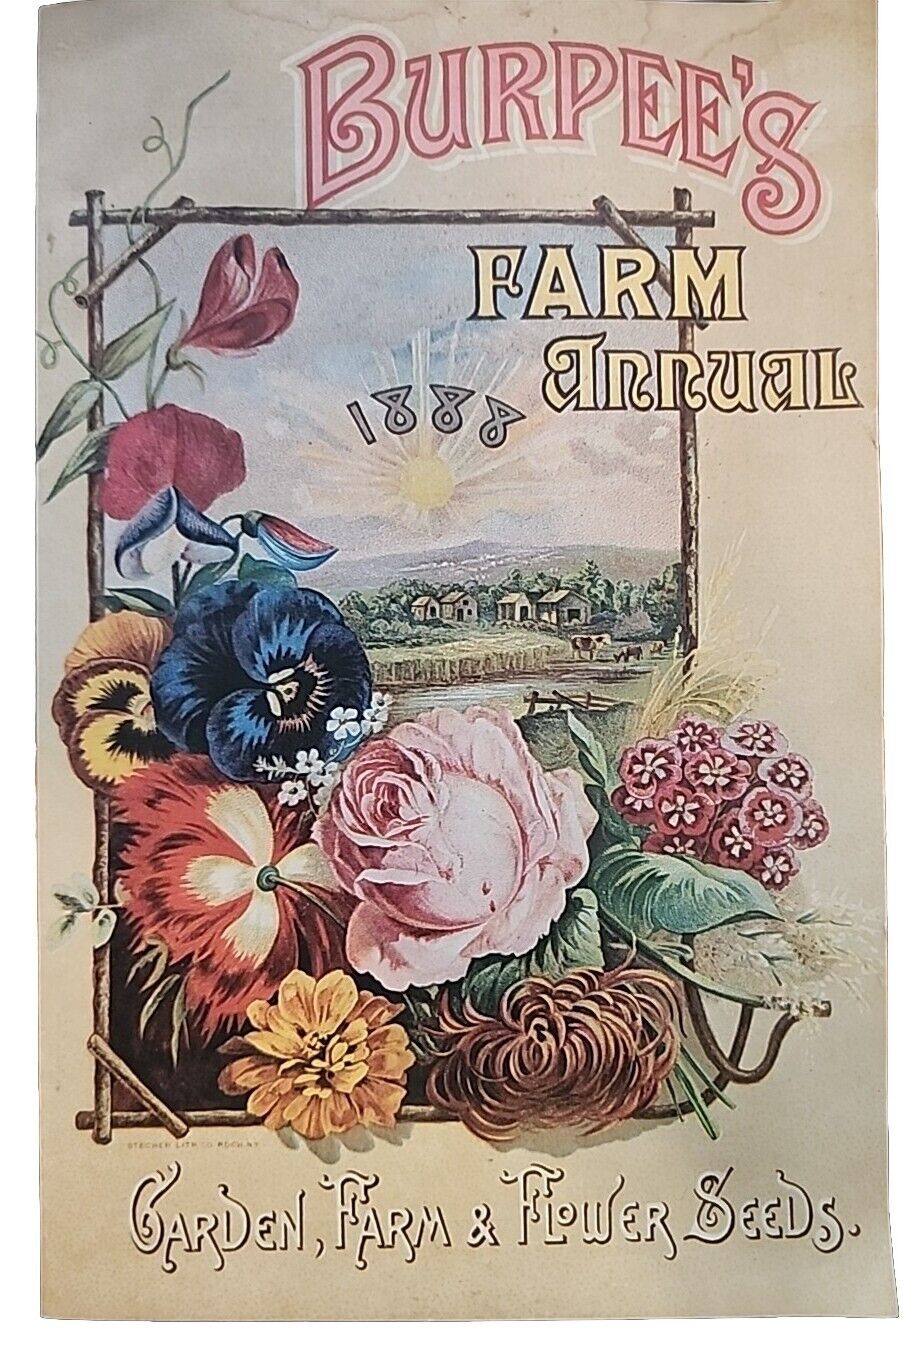 Burpee's Farm Annual 1888 Garden Farm Flowers Seeds Reproduction Vintage